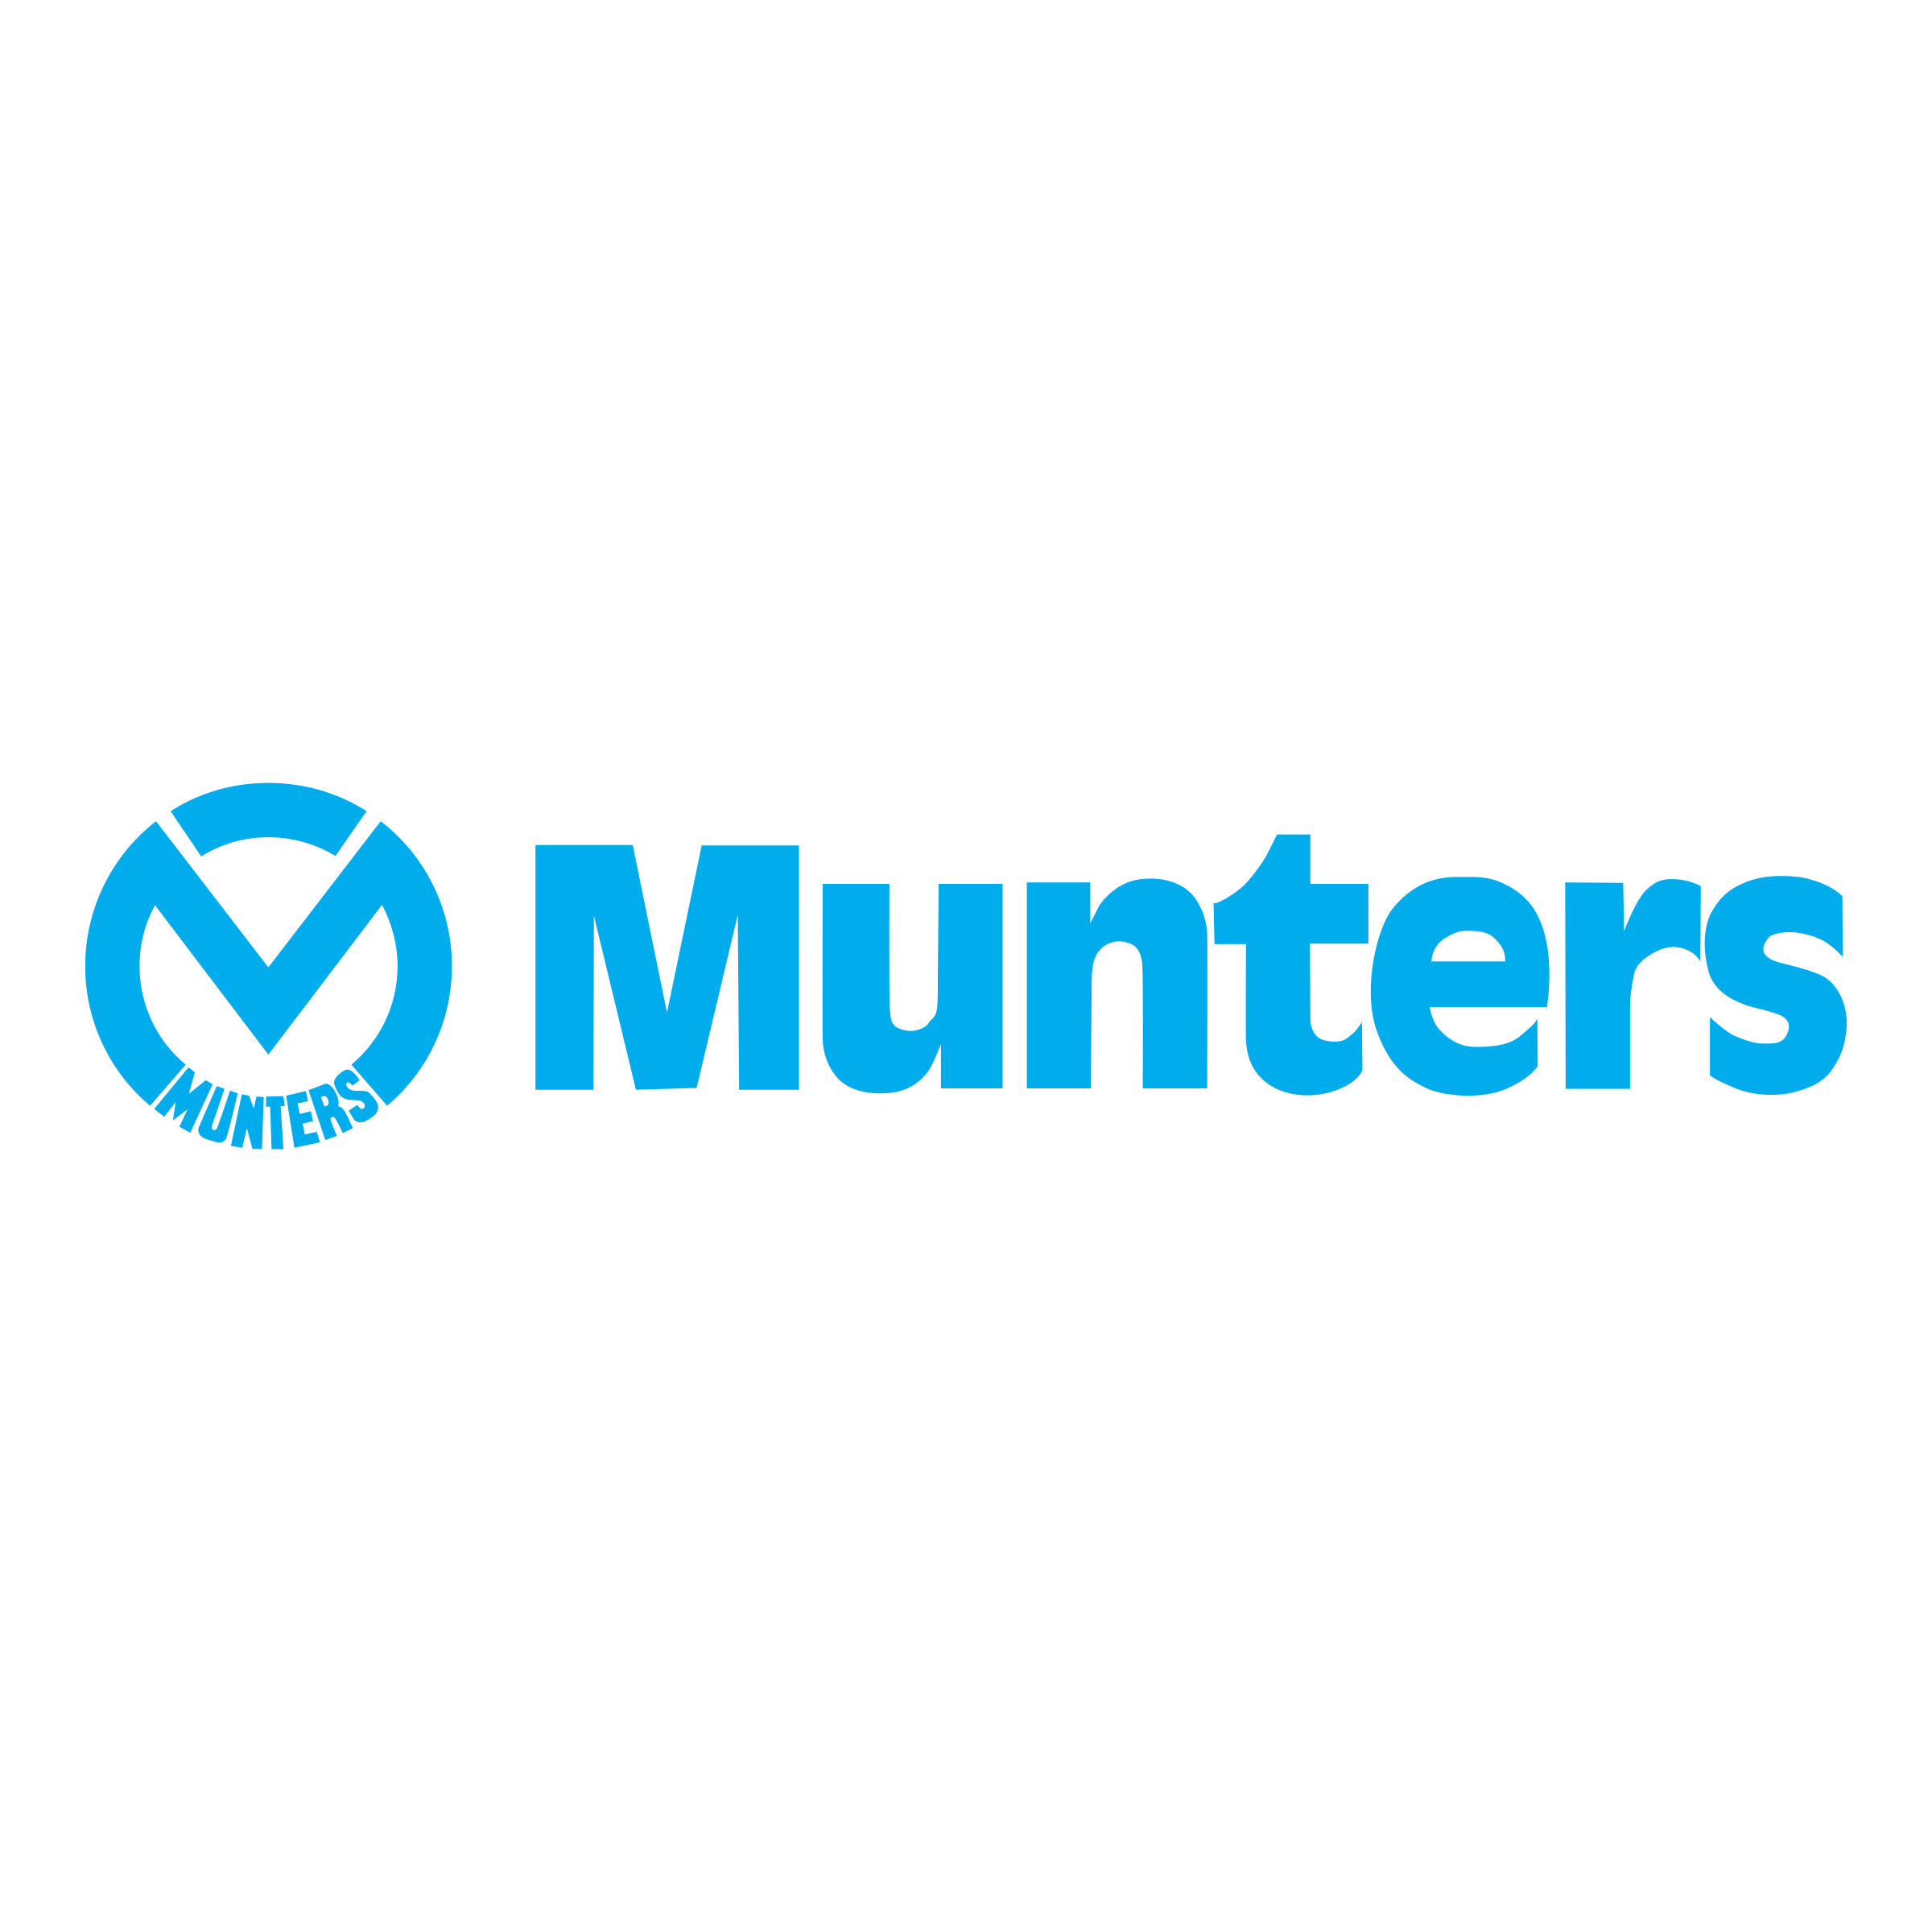 MUNTERS_logo.png